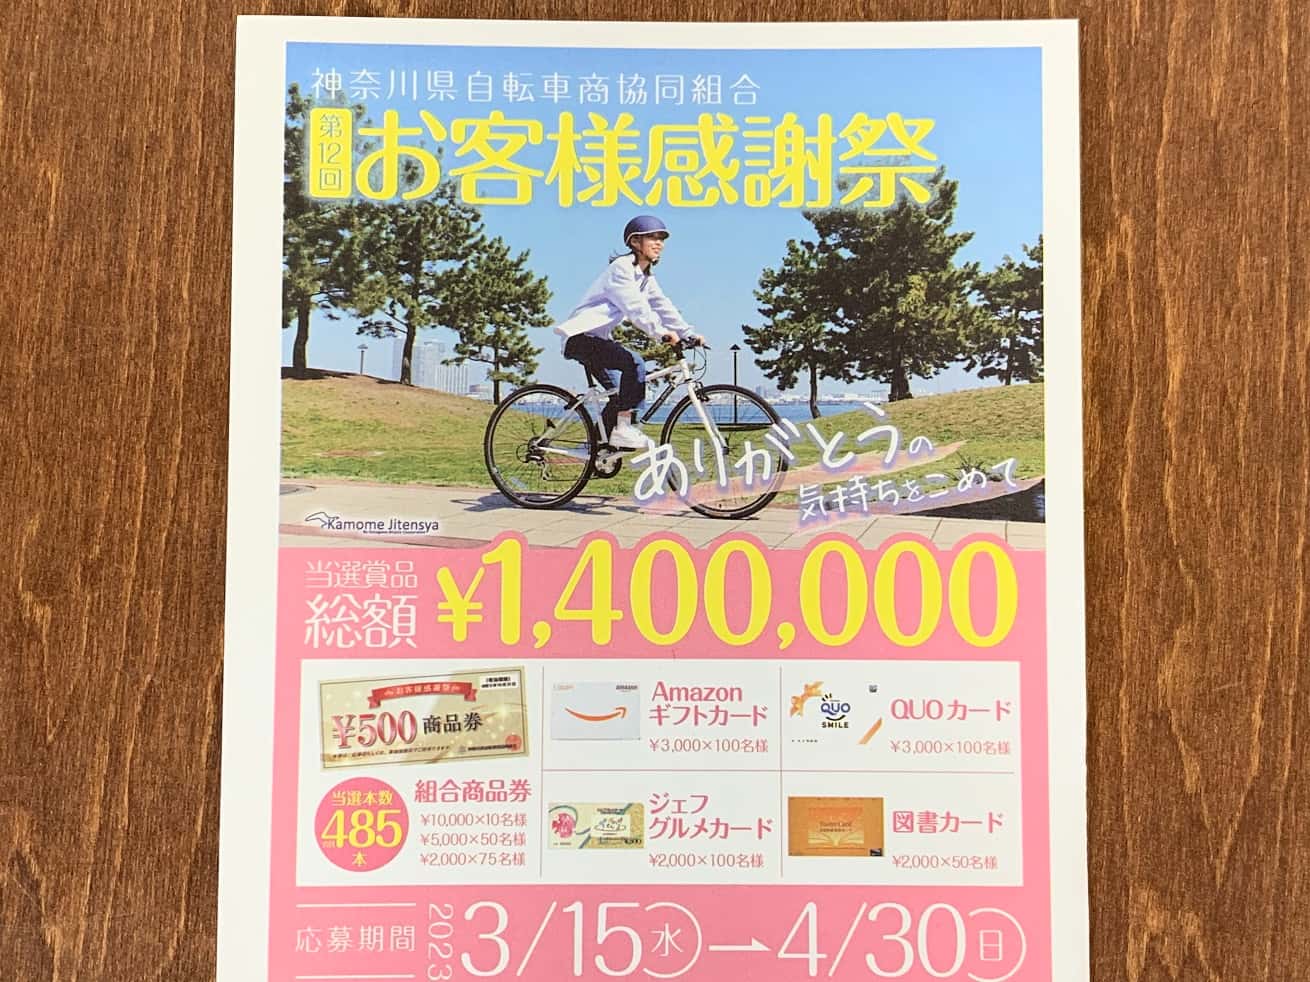 神奈川県自転車組合「第12回お客様感謝祭」ポスター